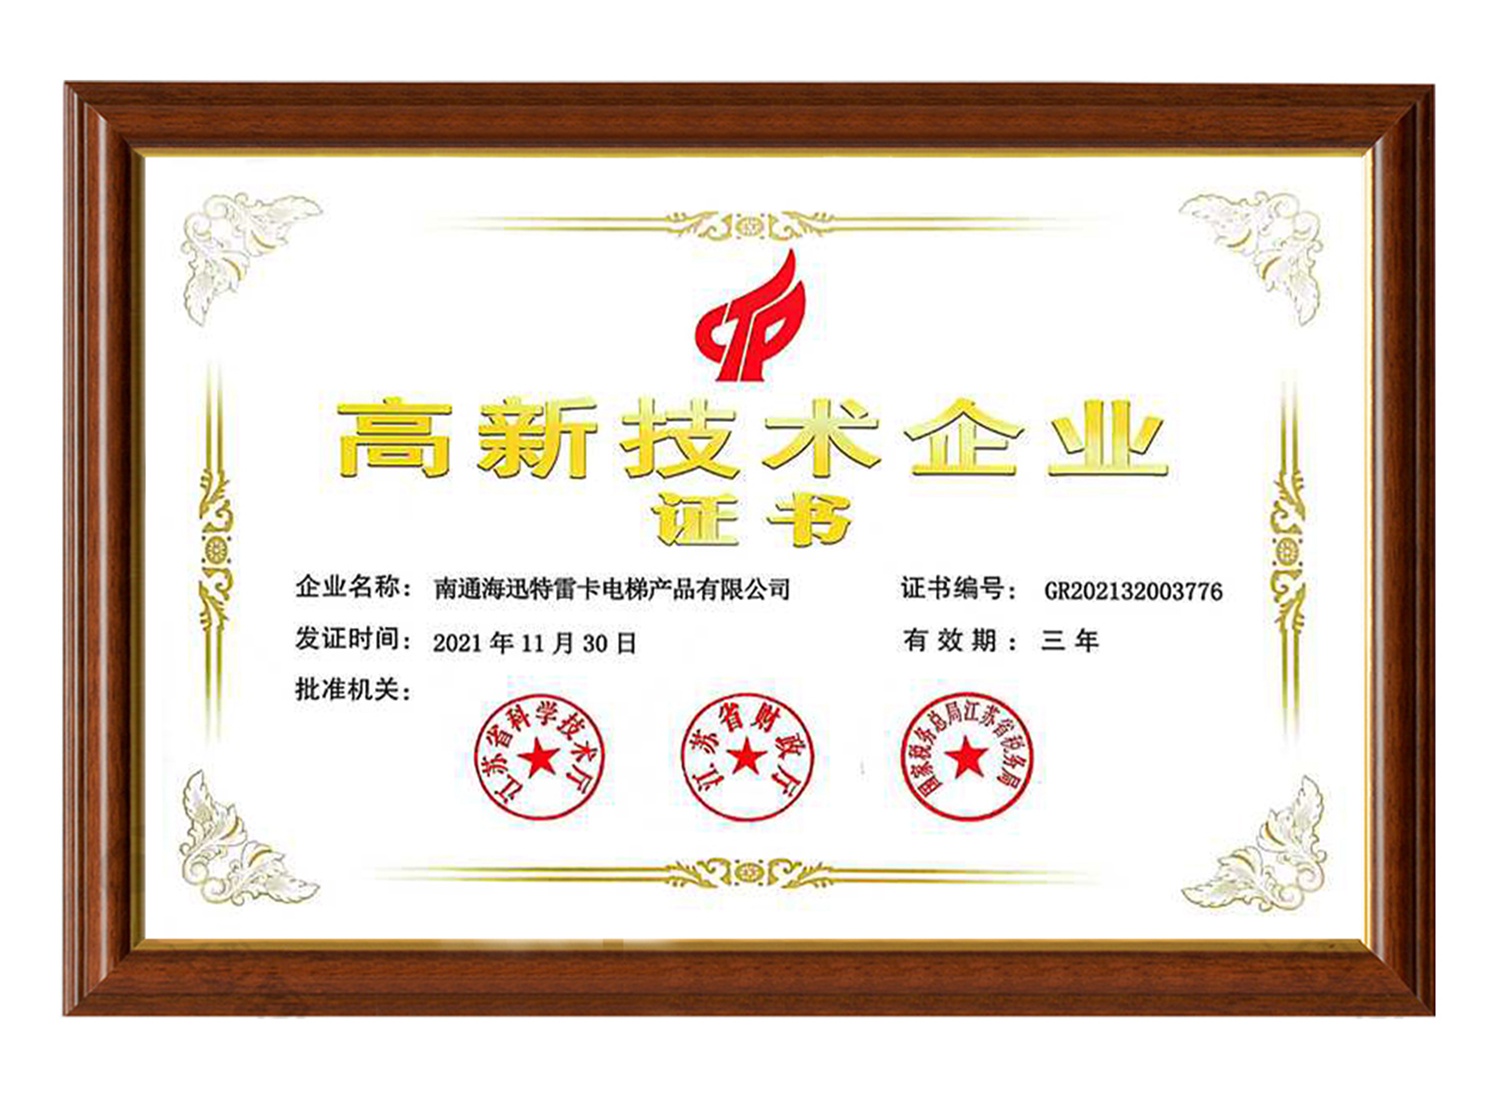 南通海迅特雷卡电梯产品有限公司高新技术企业证书